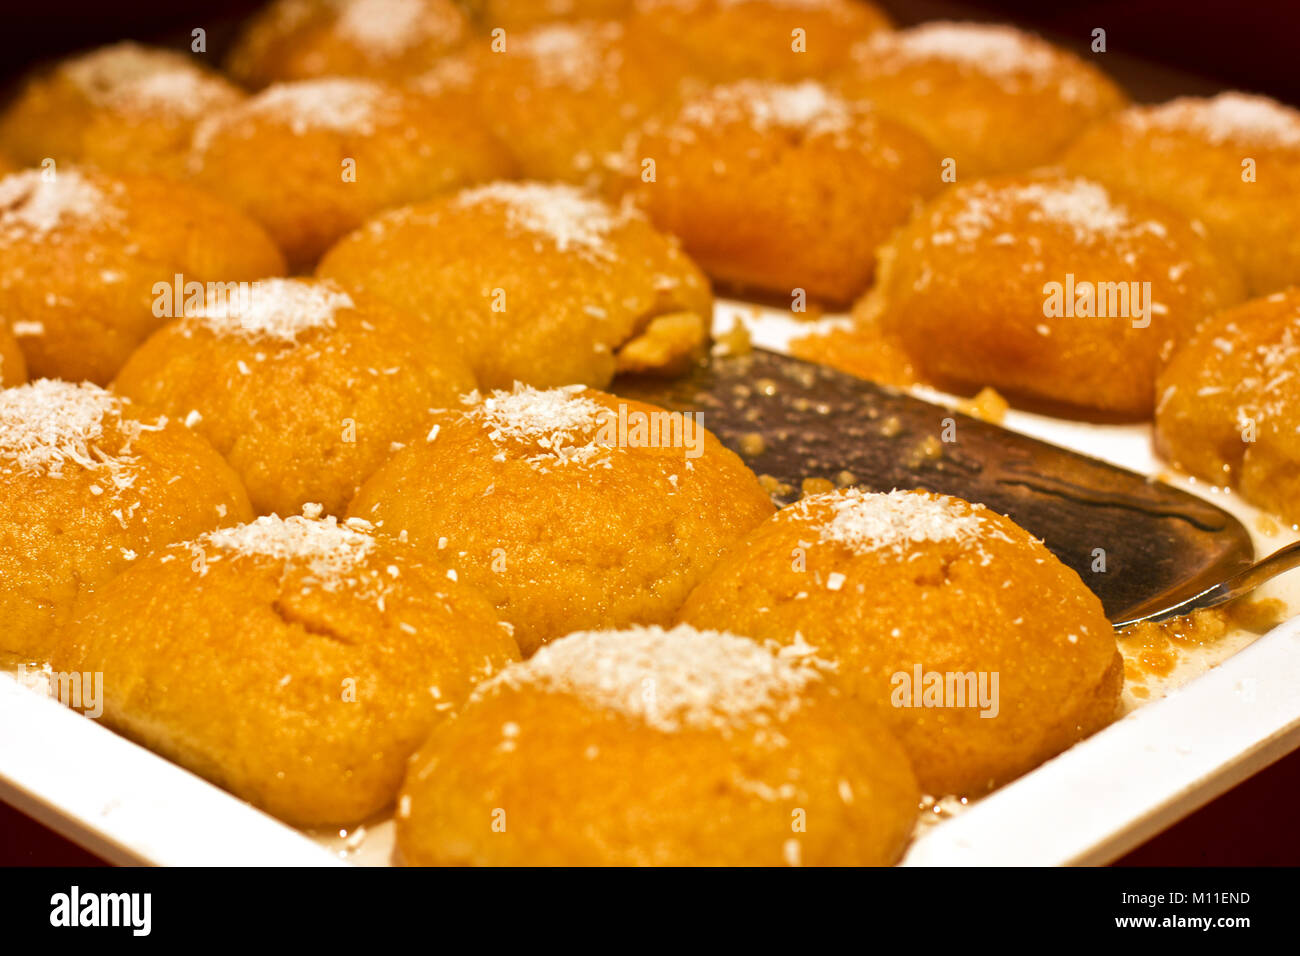 Türkische Spezialitäten mit Kokos Chips auf einem weißen Teller mit silber  Spachtel Stockfotografie - Alamy